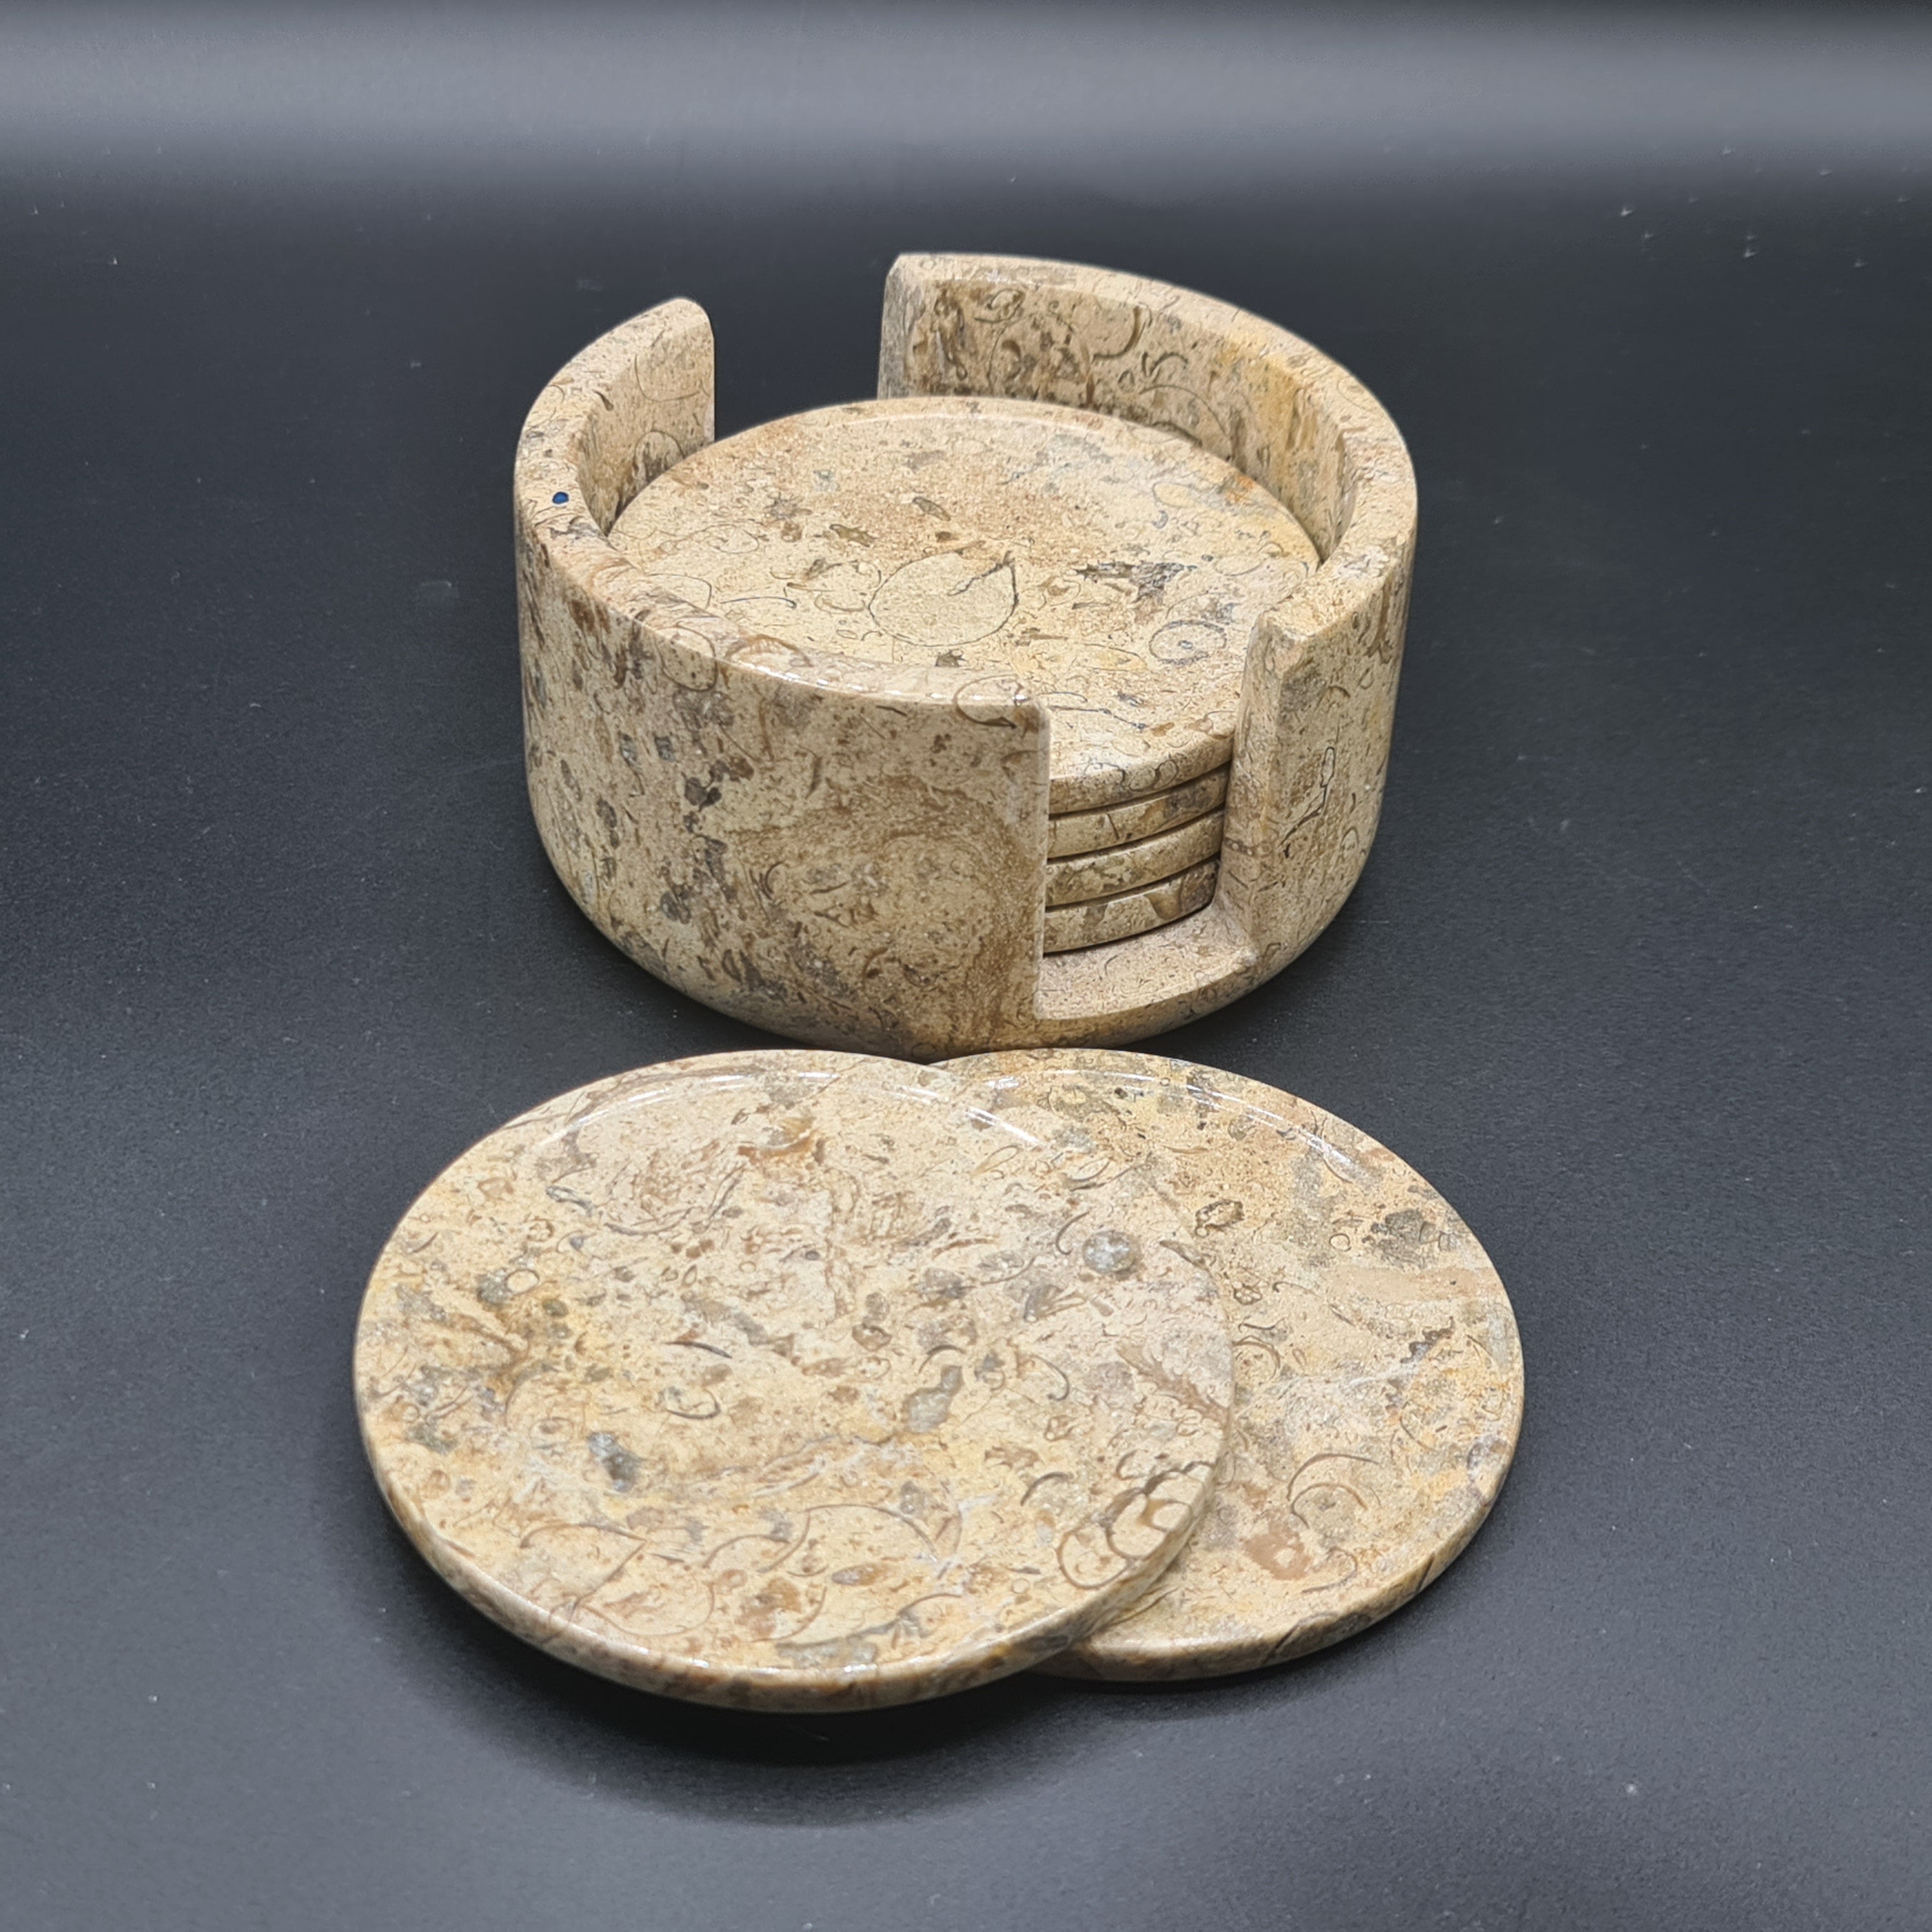 Fossil Marble (Onyx) Tea Coasters - Set of 6